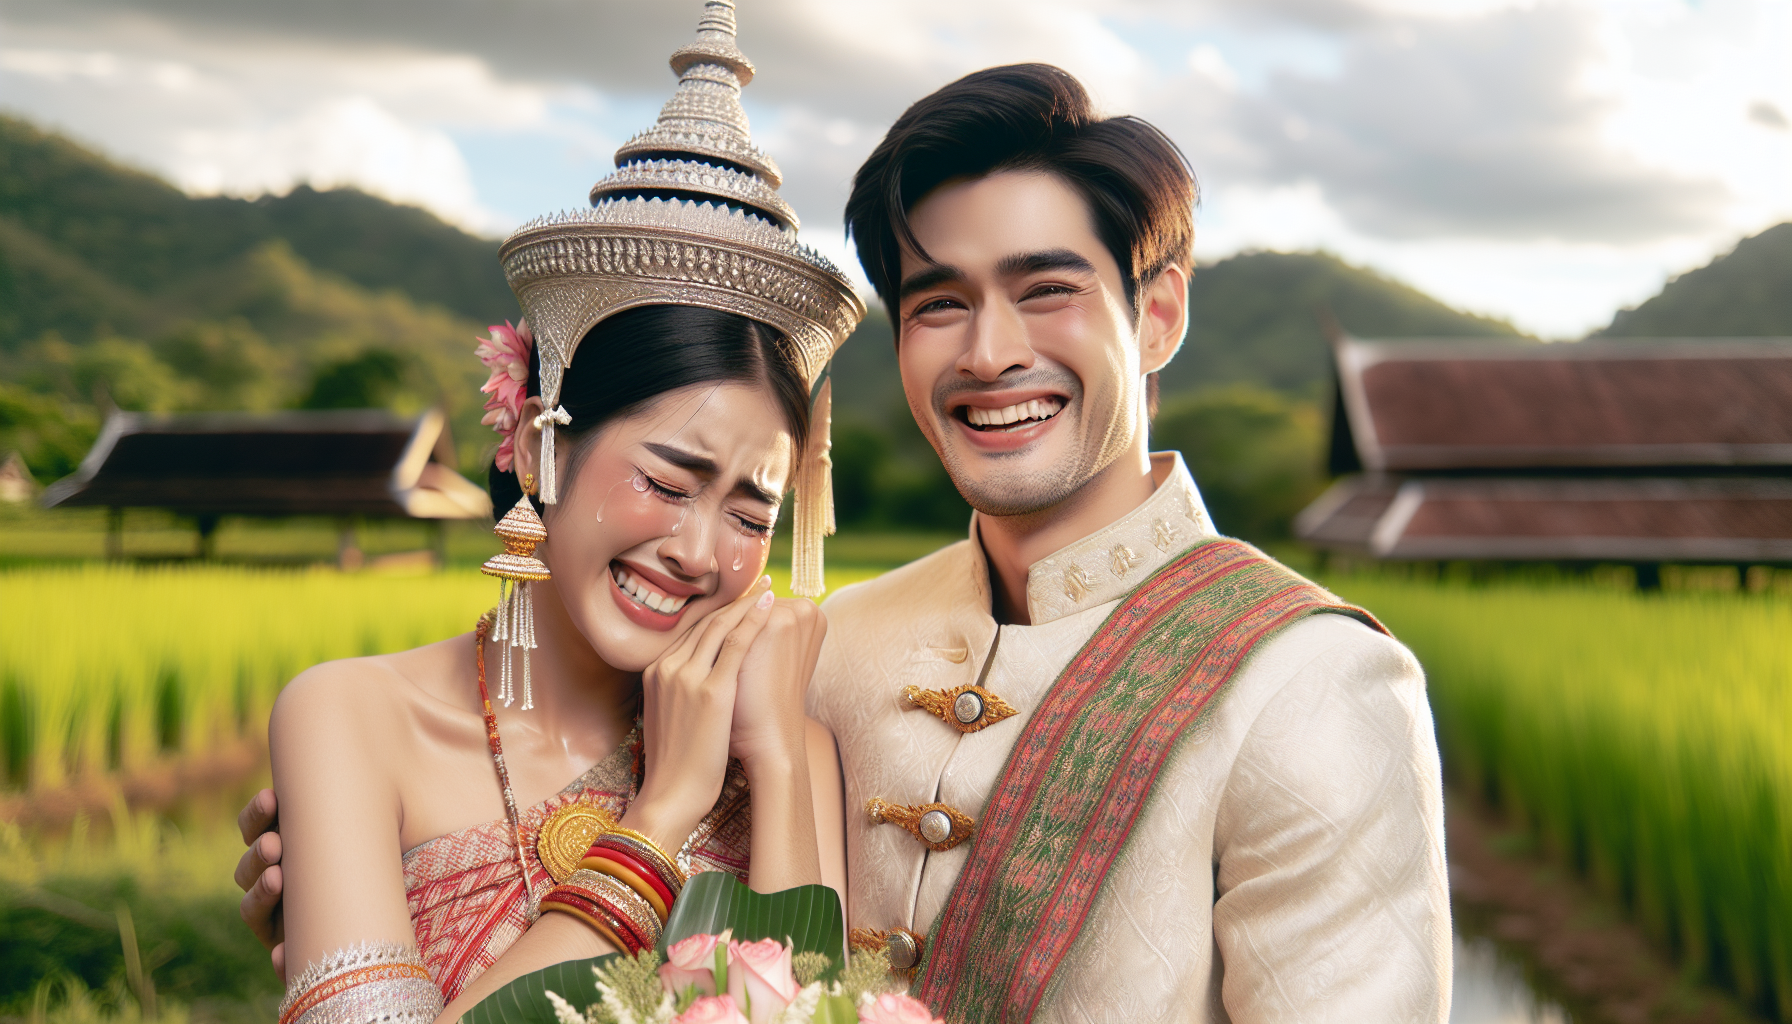 découvrez l'incroyable histoire d'un couple thaïlandais qui célèbre enfin le mariage pour tous, une avancée majeure dans leur pays.